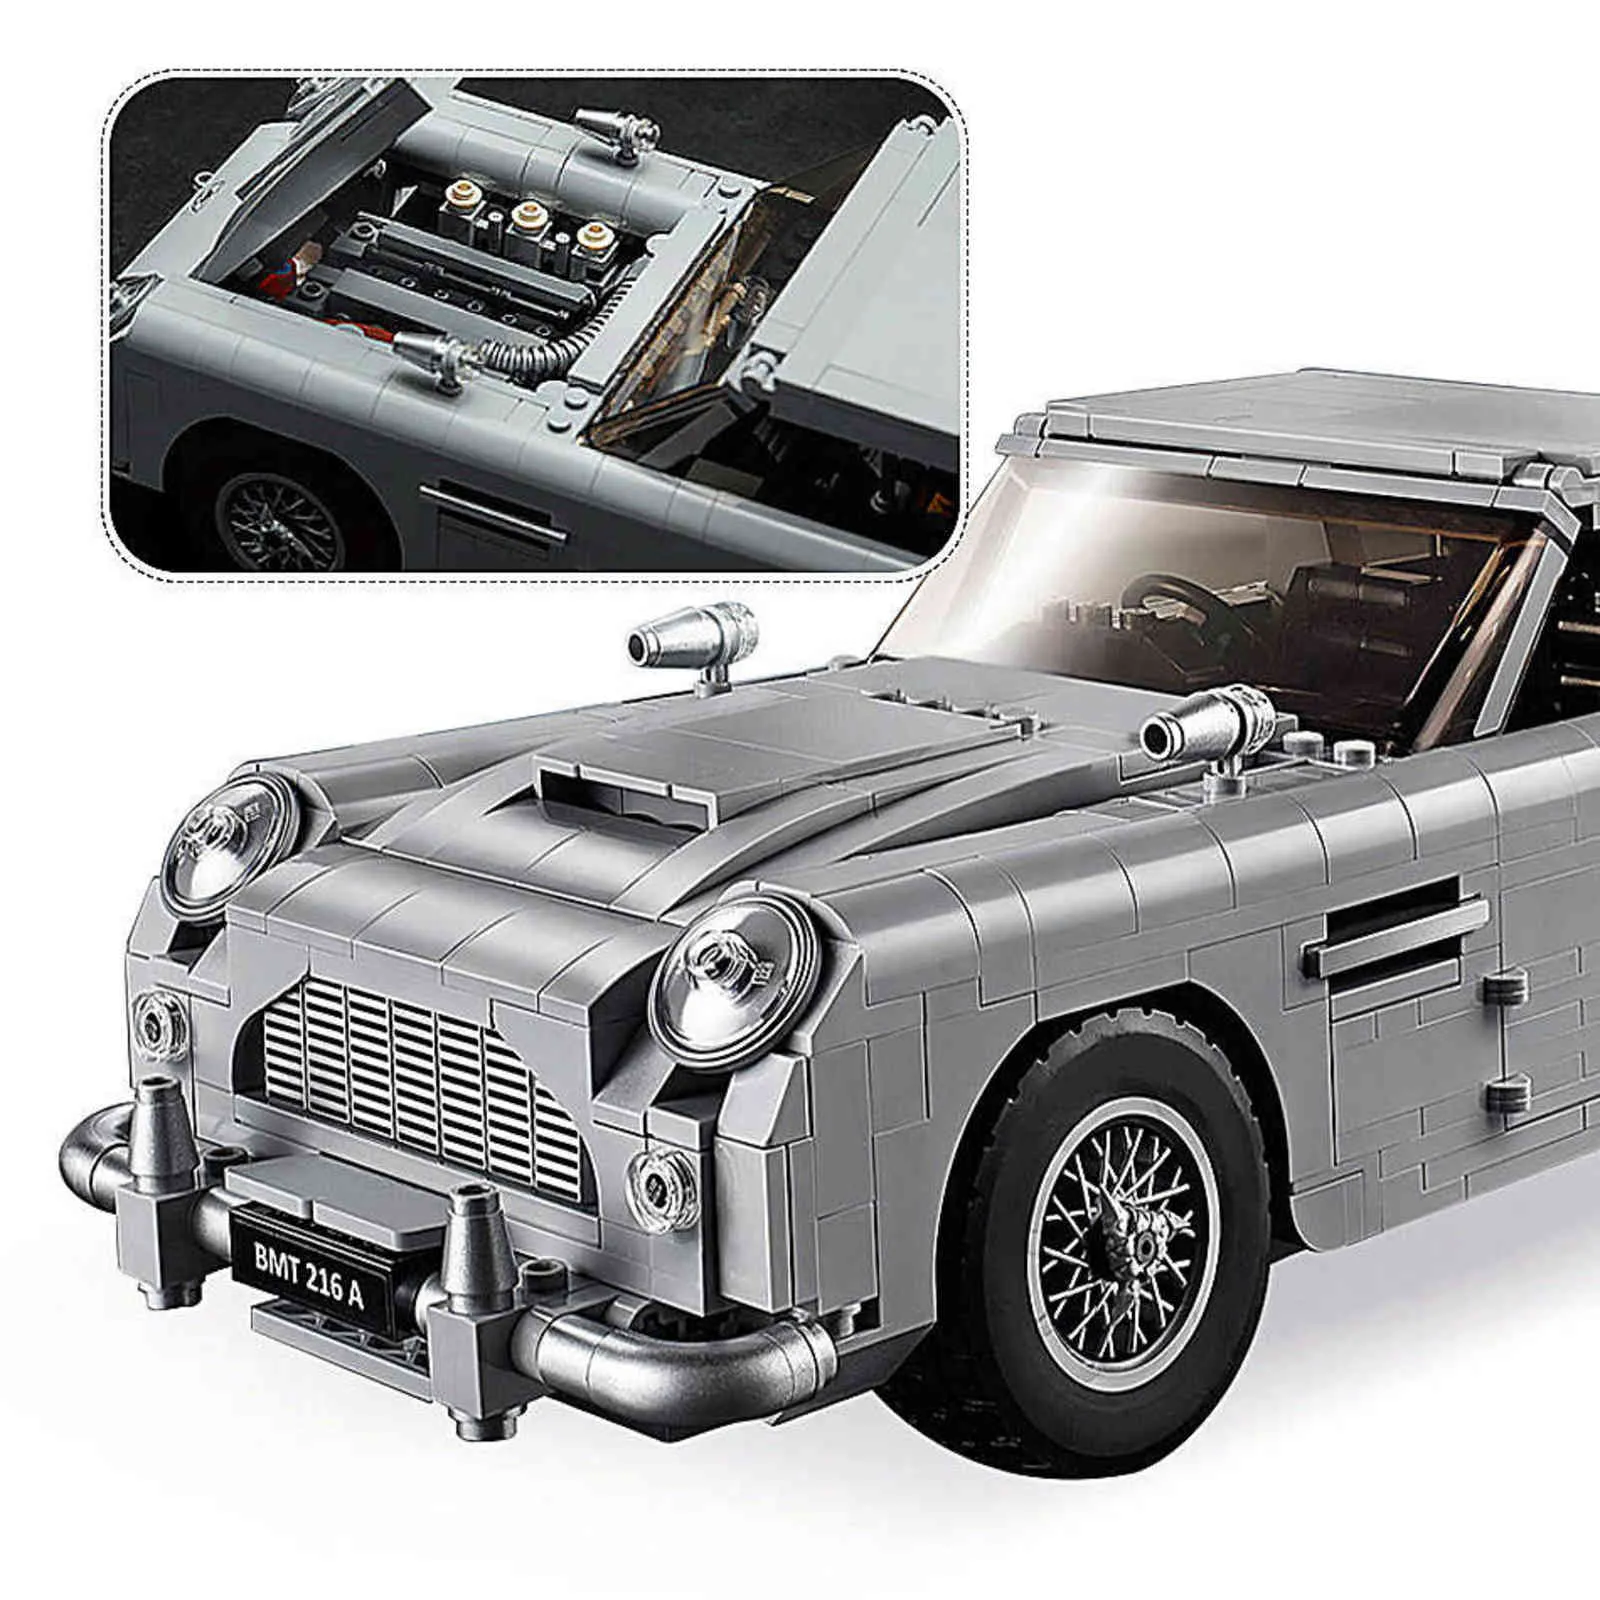 In Magazzino 007 James Bond Technic Serie di Auto 10262 Building Blocks Mattoni Creatore Bambini Modello Regali Giocattoli H1103